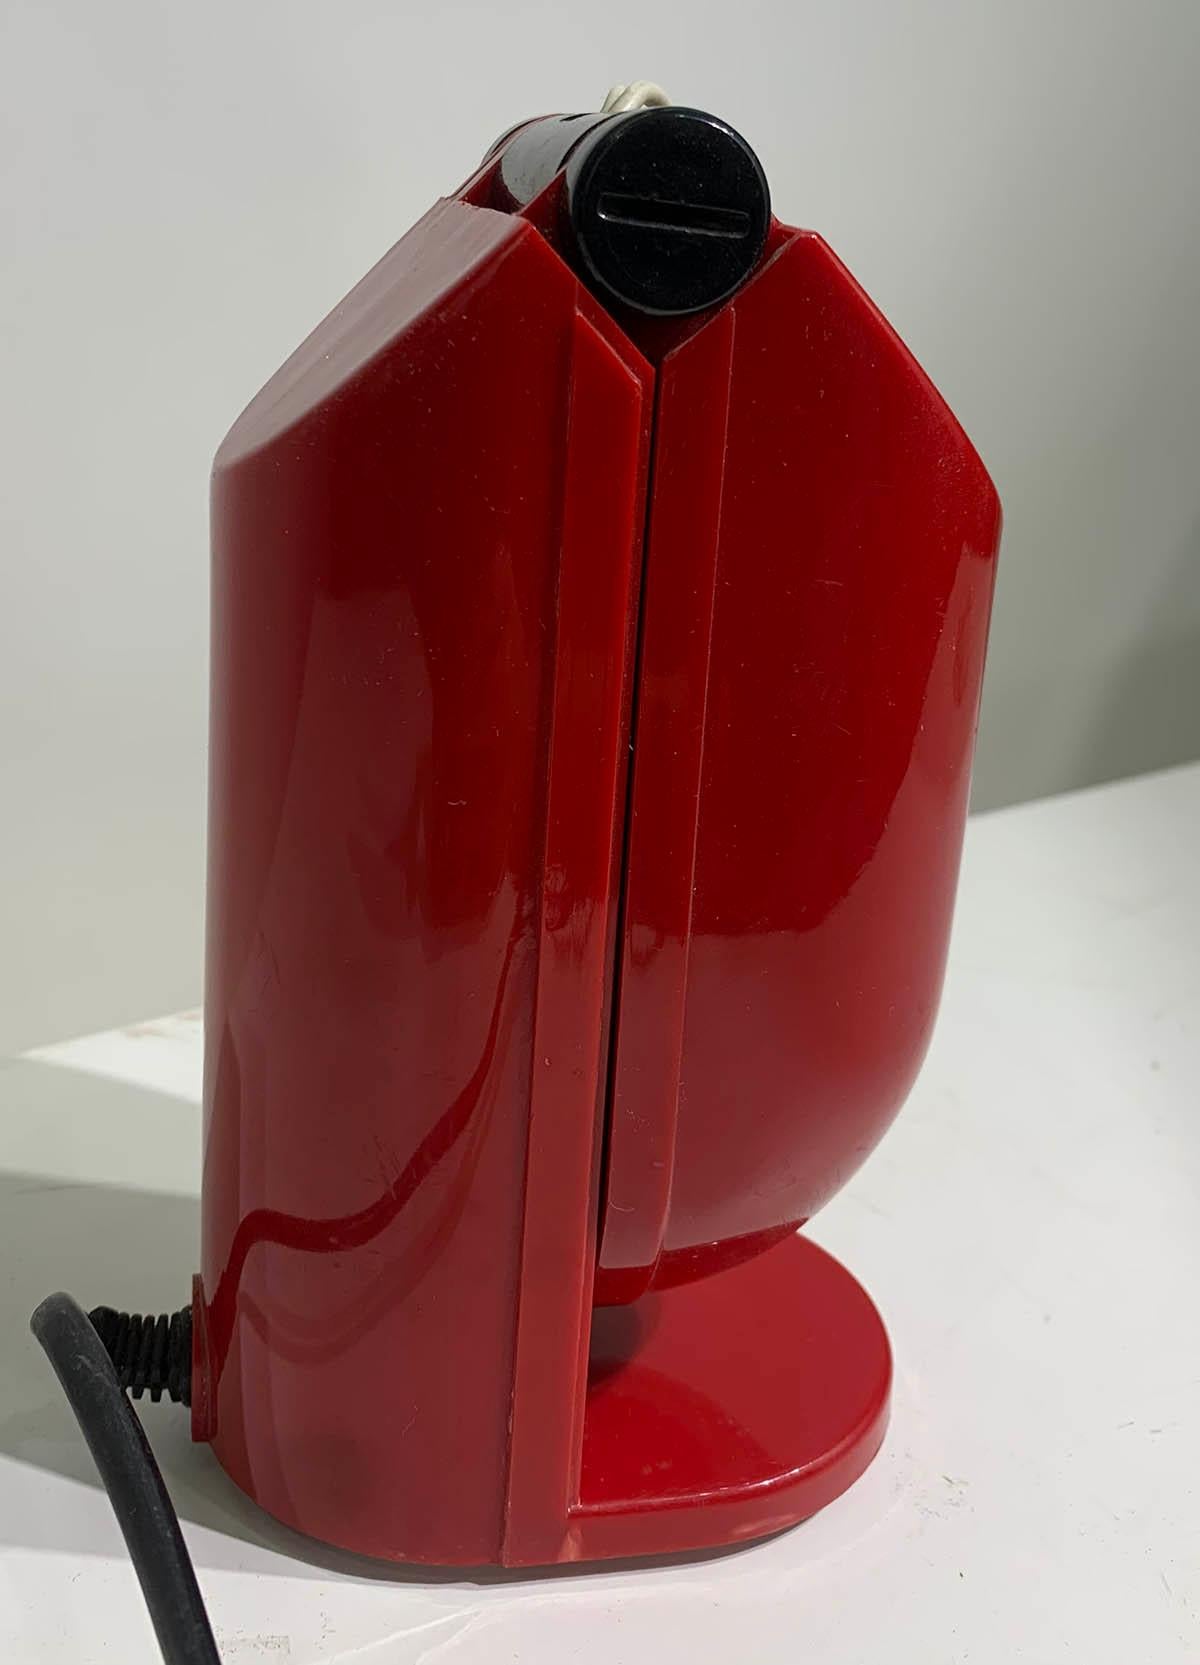 La superbe lampe de table rouge modulable Manon des années 1970 est conçue par le fabricant japonais Yamada Shomei Lighting.
L'interrupteur se trouve à l'intérieur du bras pliant, la lampe s'allume lorsque le bras est ouvert à 45 degrés.
Ainsi, la